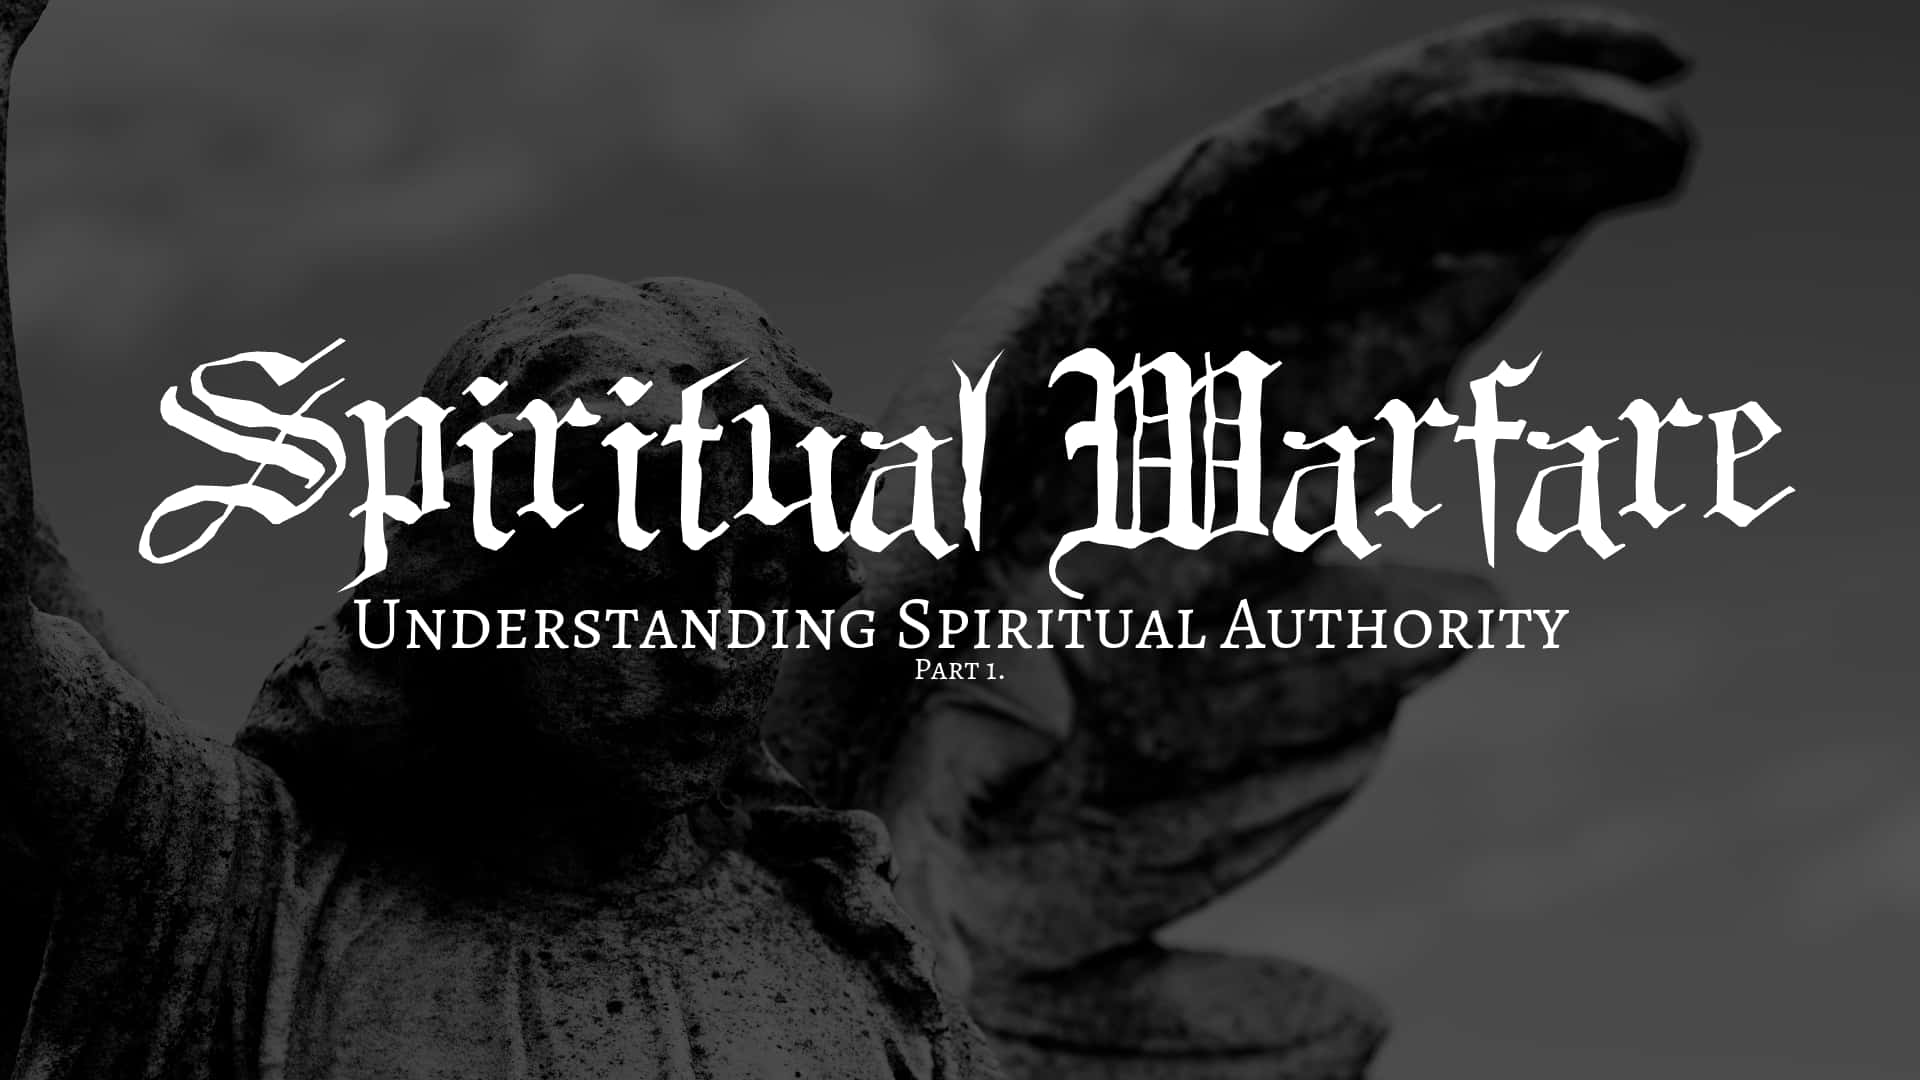 Åndelig krigsførelse: Refererer til den indre styrke og tro, der er nødvendig for at bære kampen mod mentale og åndelige kampe. Wallpaper